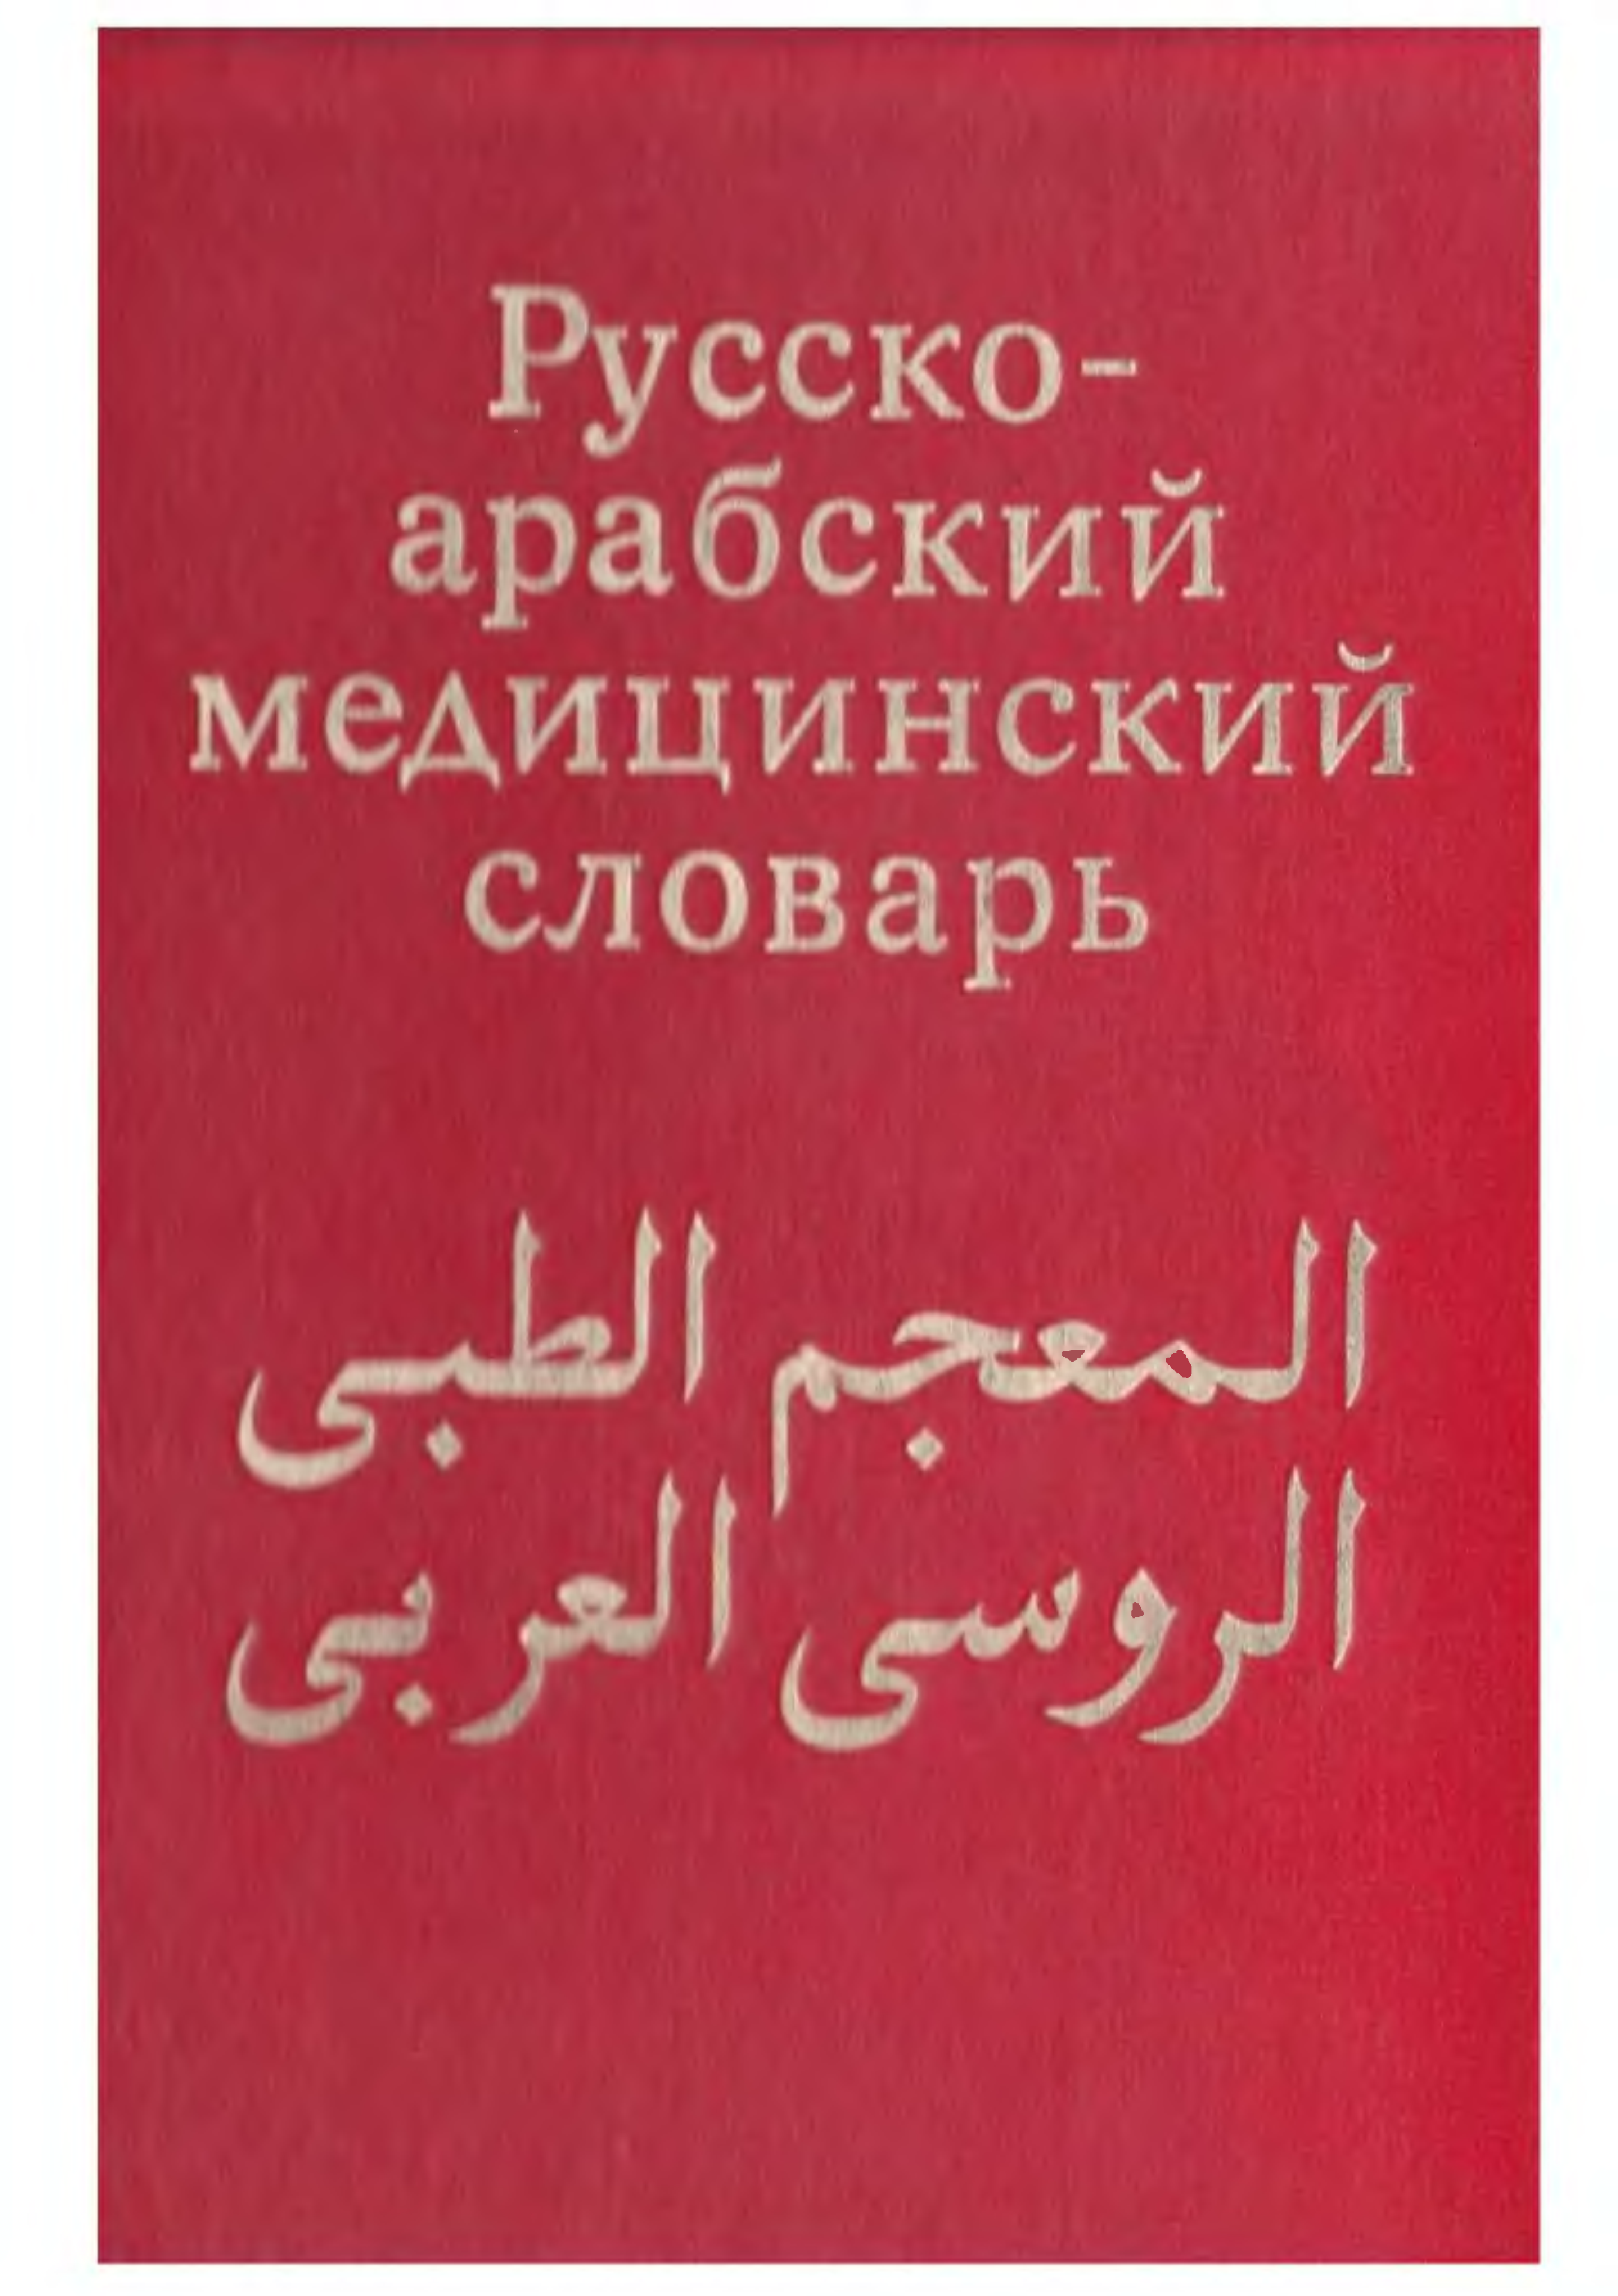 арабский переводчик на русский язык по фото